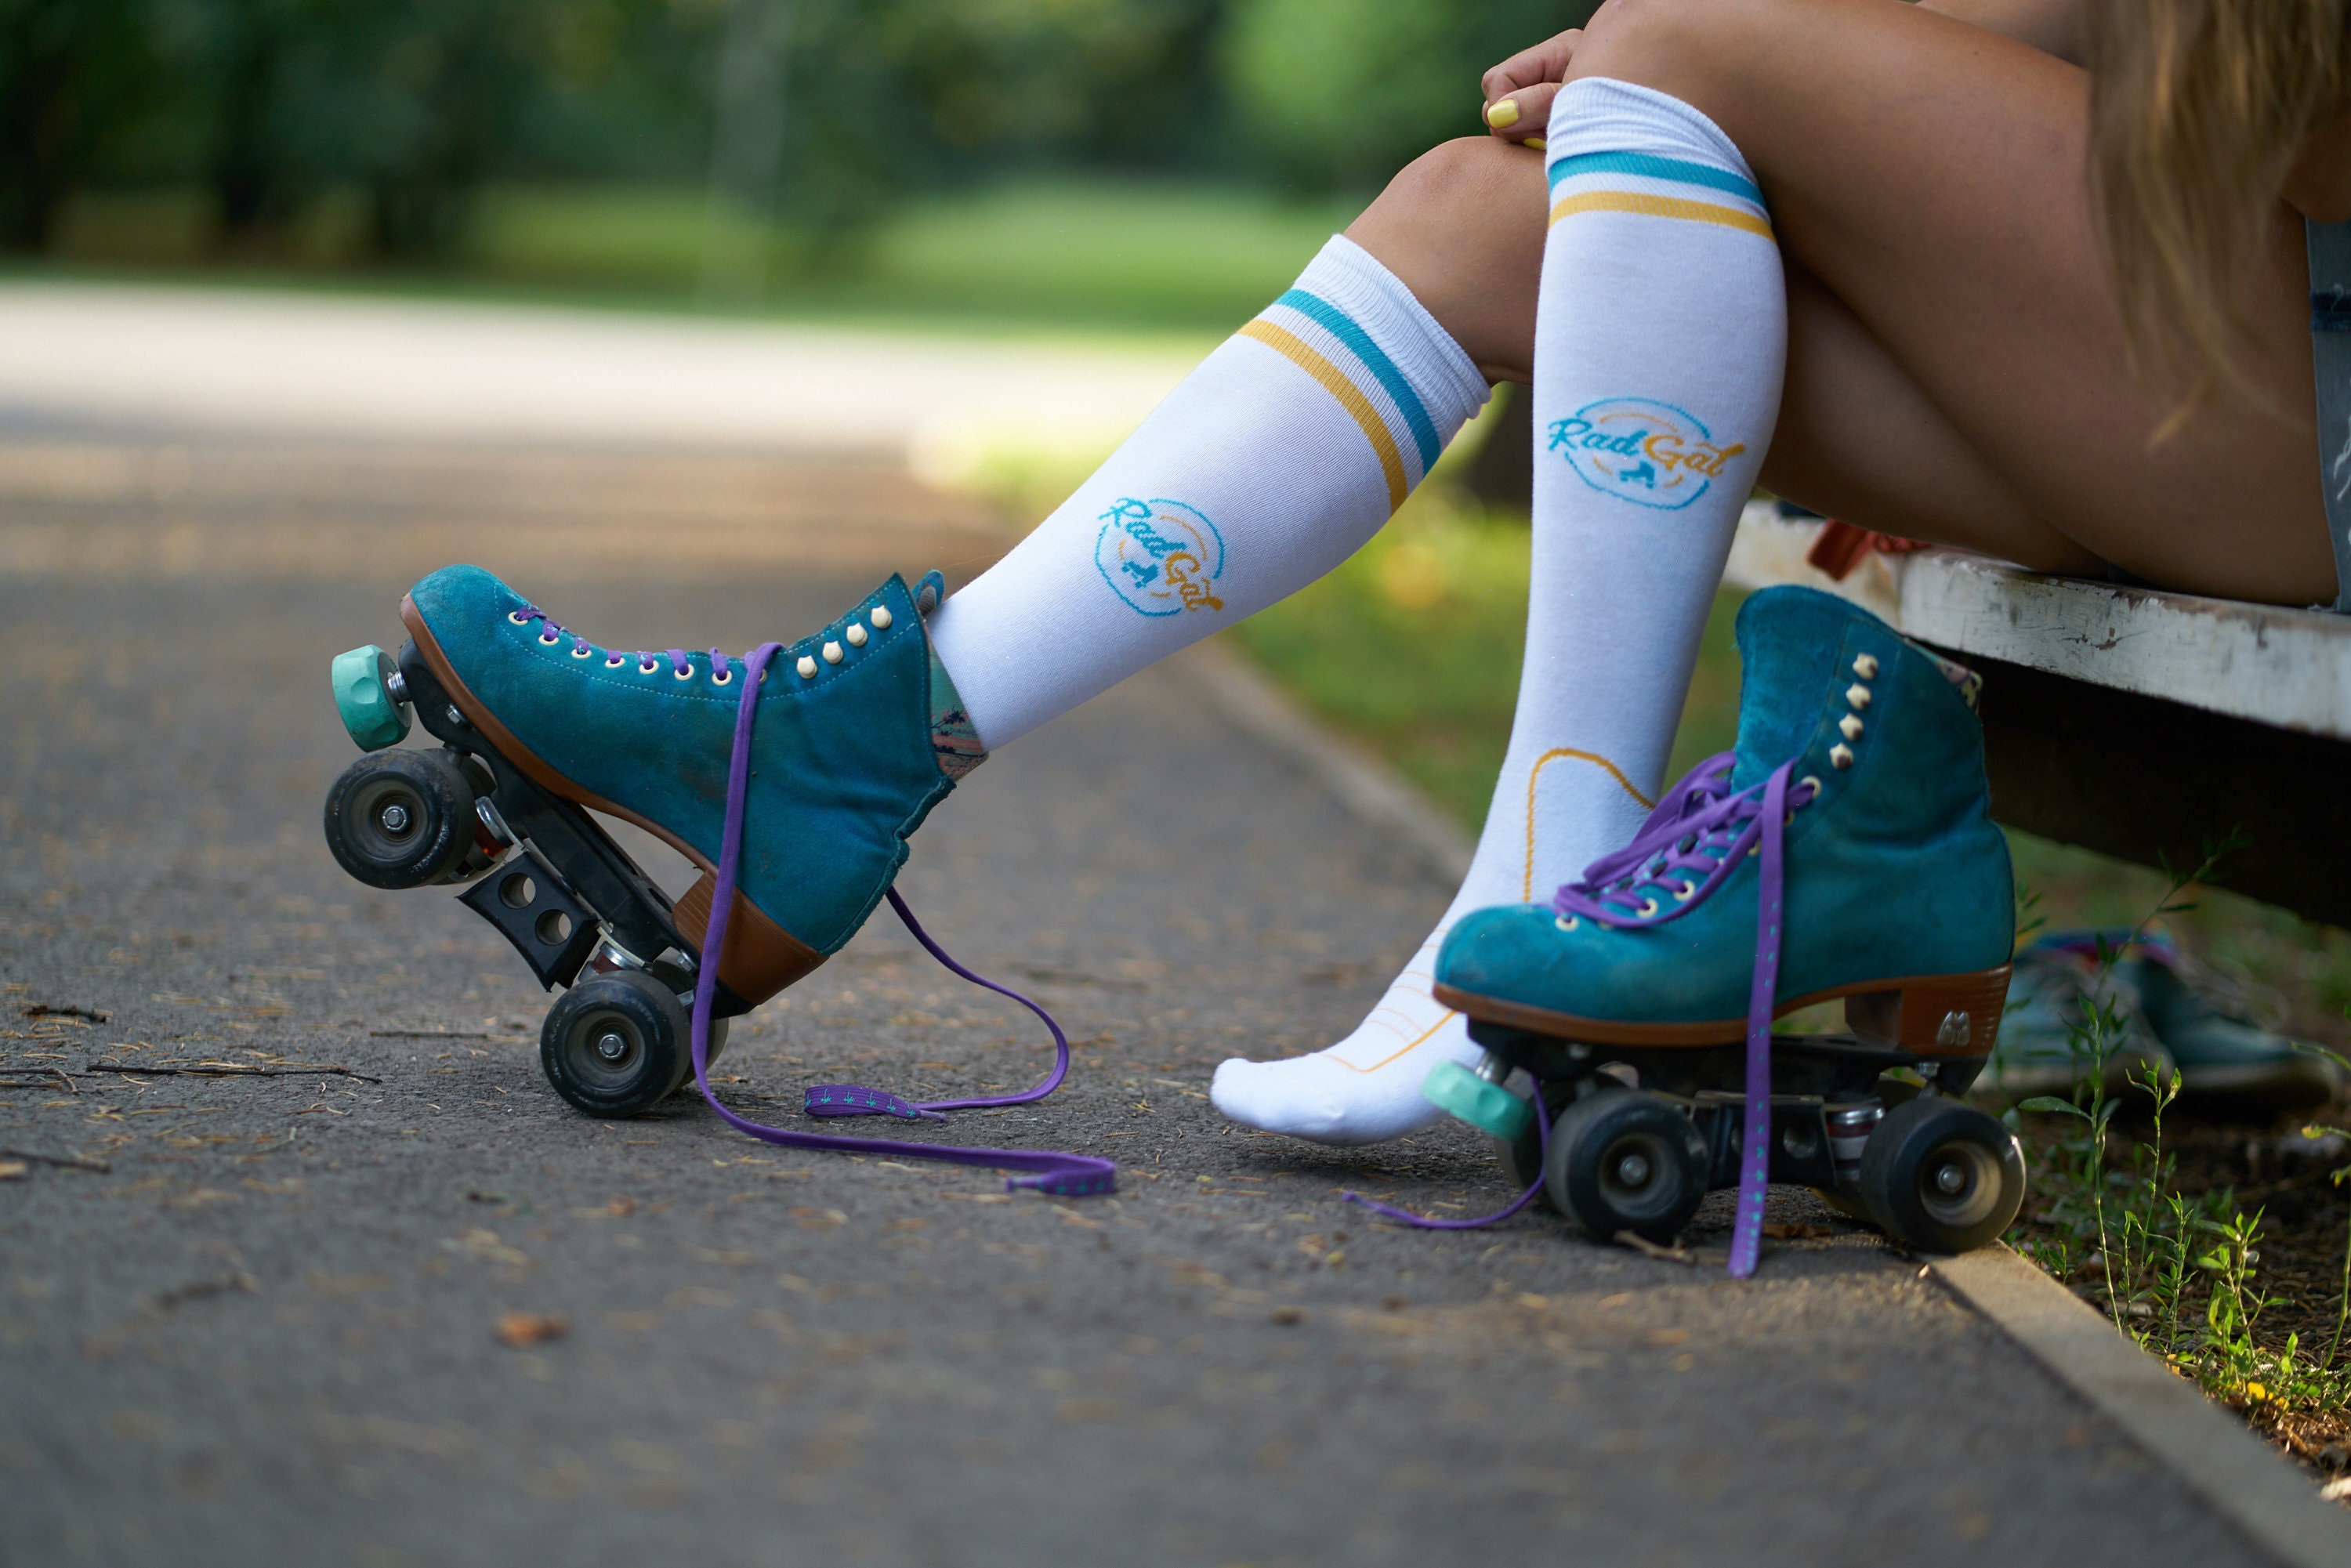 Skate Socks Roller Skate Accessories Knee High Socks Roller 